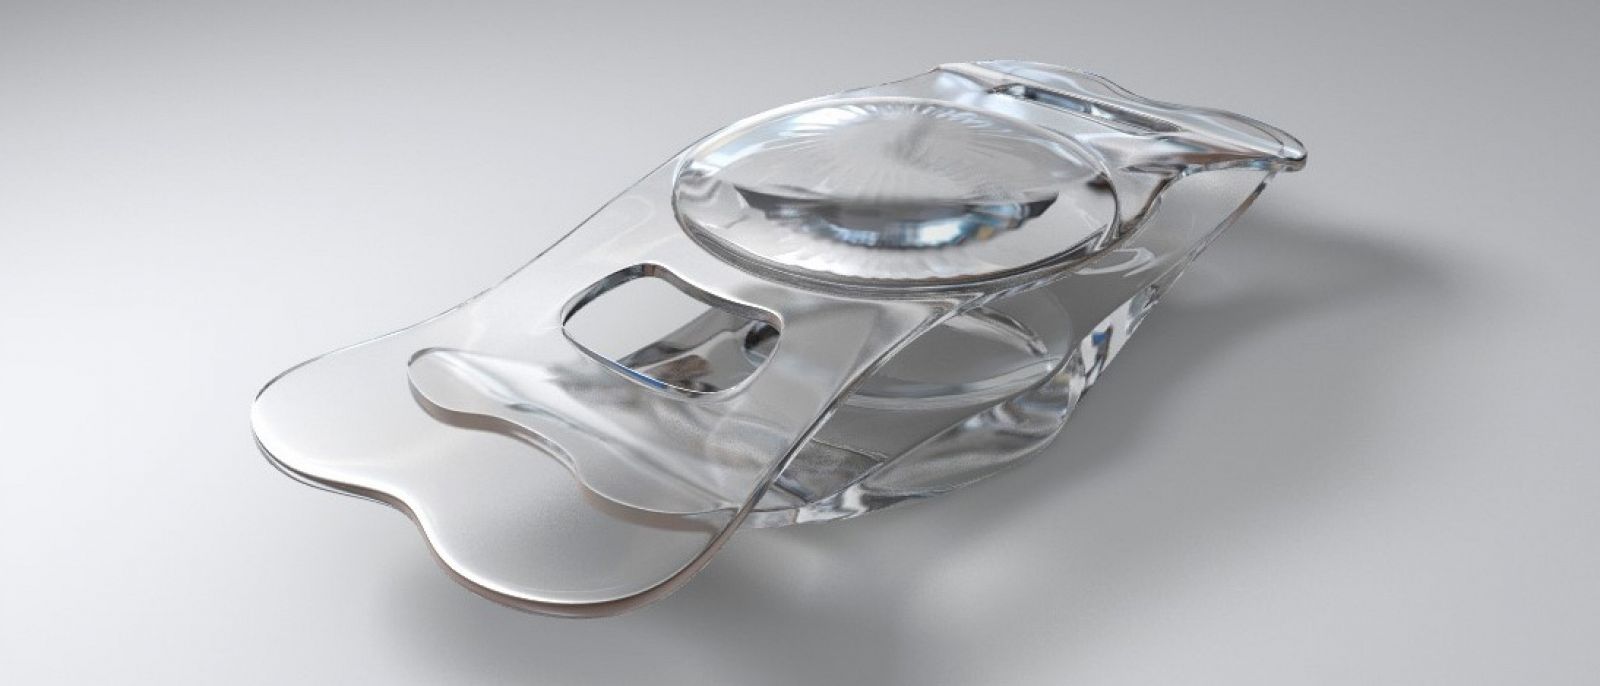 Las lentes fabricadas con tecnología espacial en el Laboratorio de Óptica de la Universidad de Murcia.